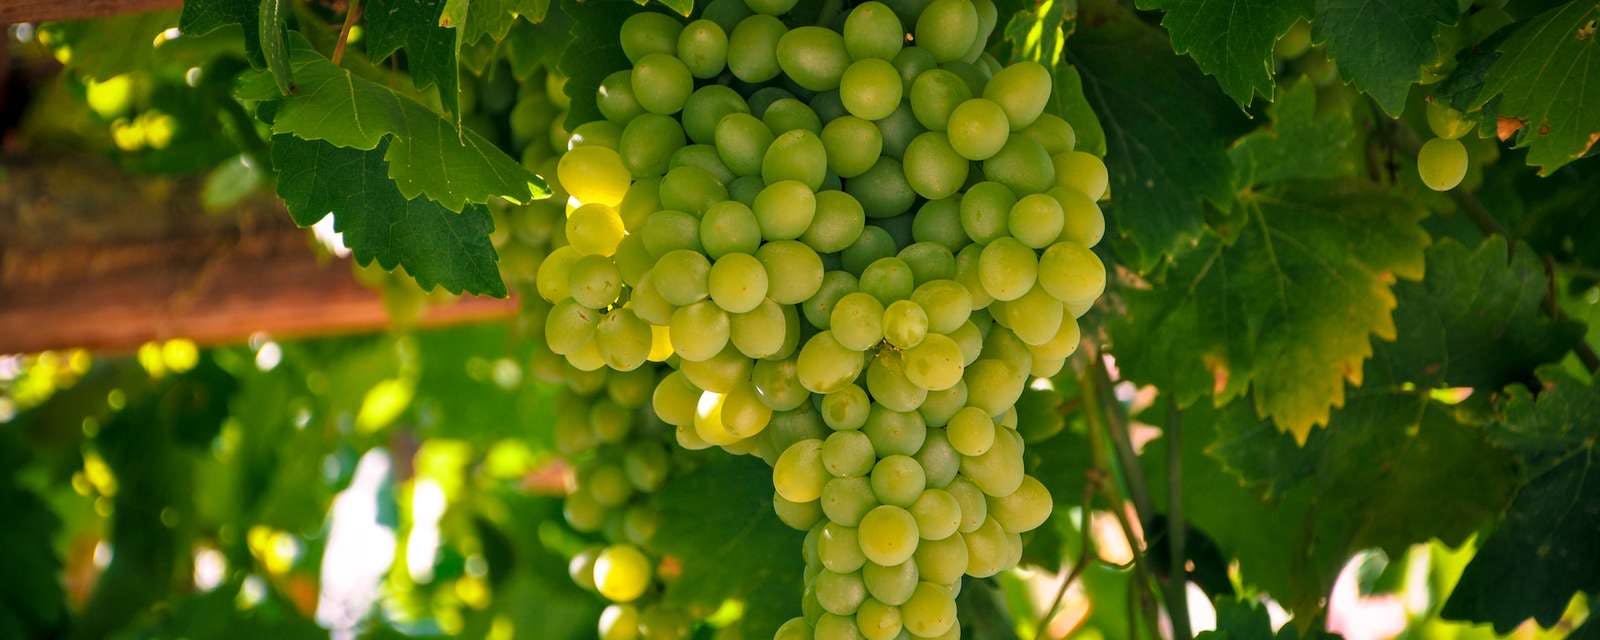 Viele reife grüne Weintrauben